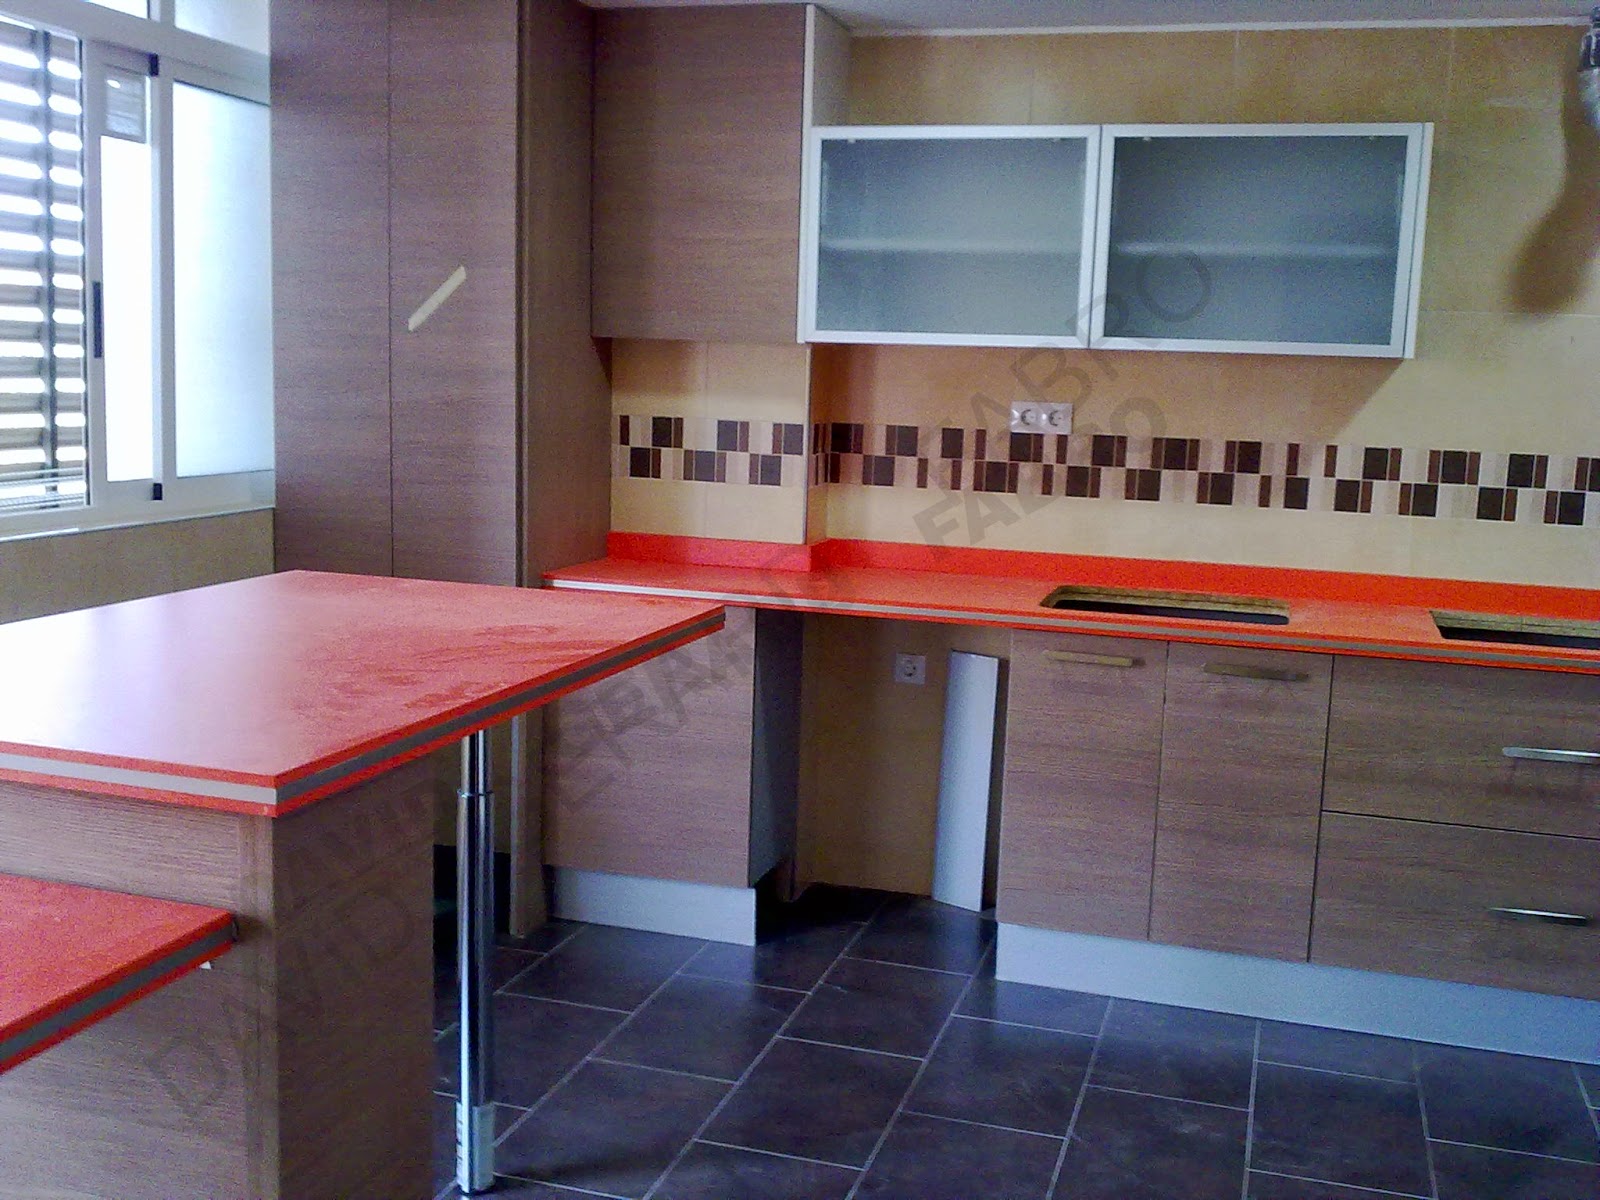 Muebles de cocina con encimera naranja.